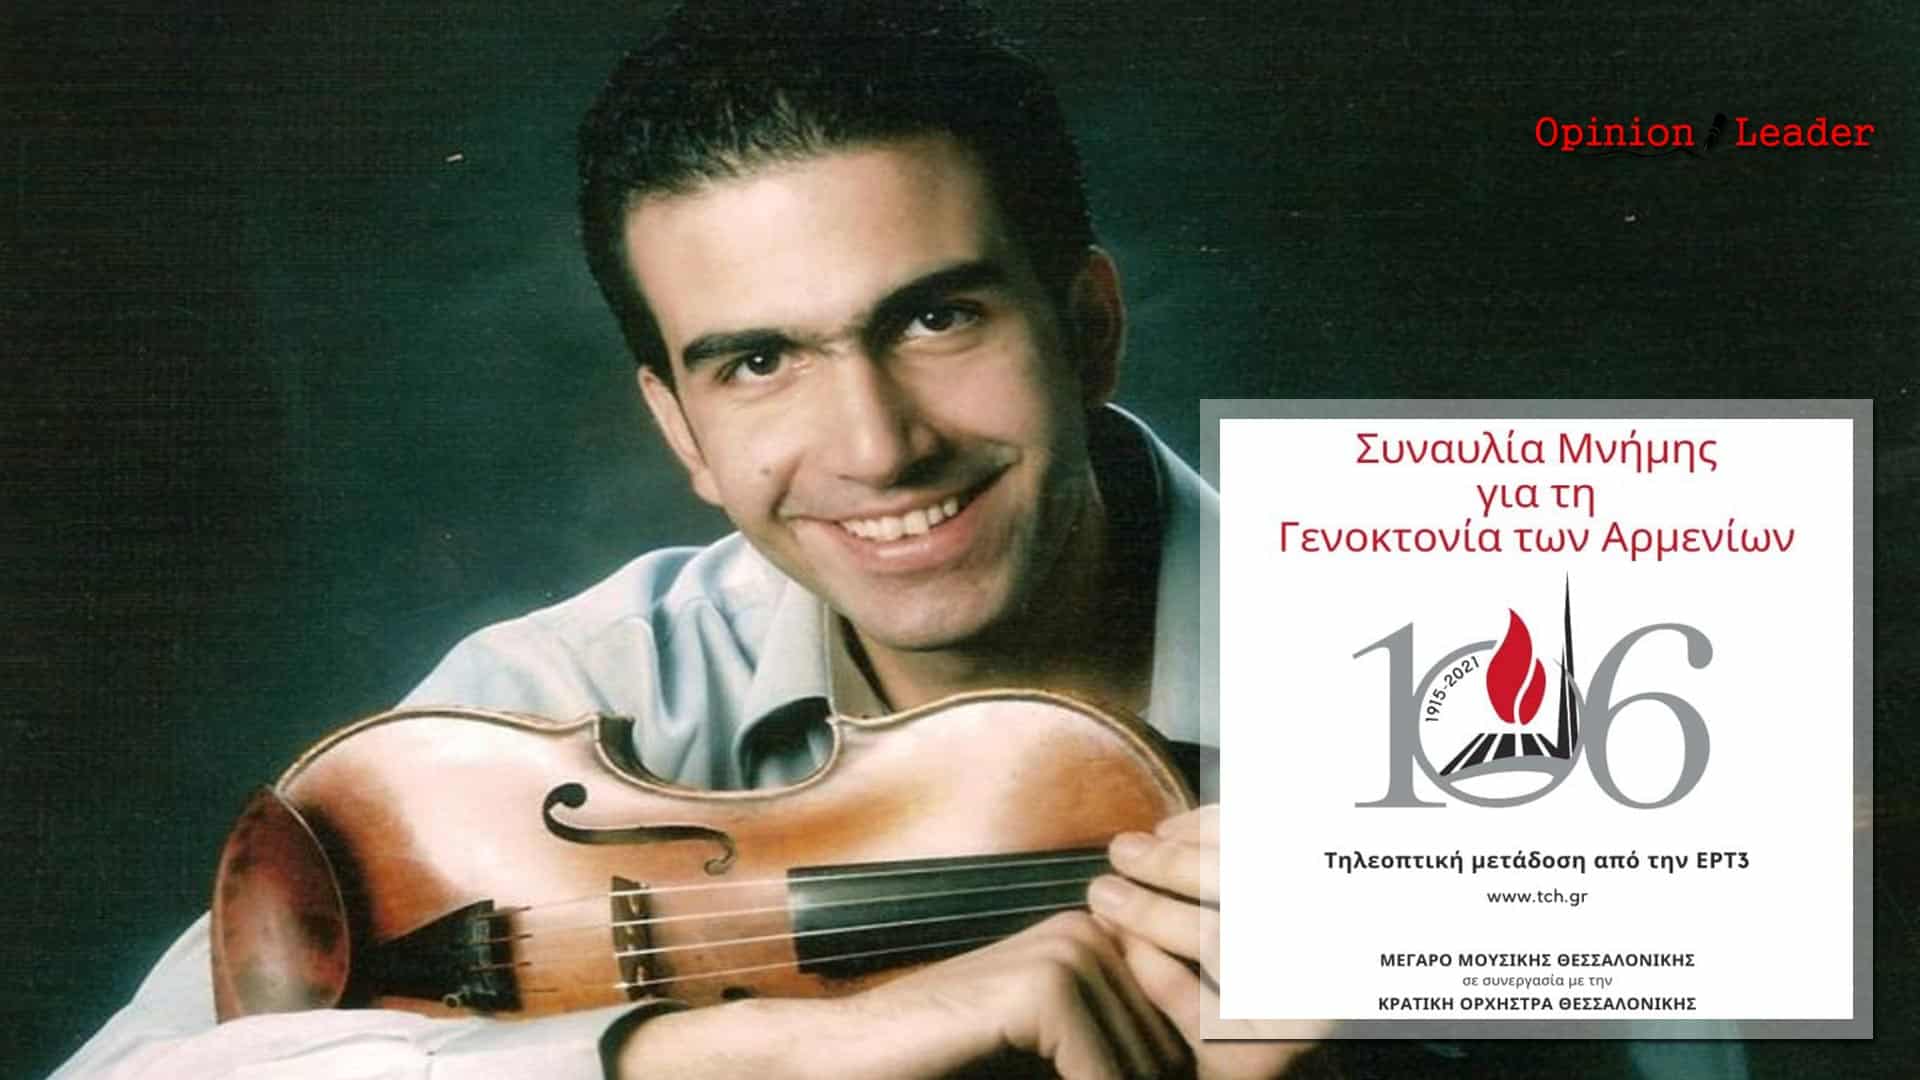 Θεσσαλονίκη - Συναυλία - Γενοκτονία Αρμενίων - Χρήστος Γαλιλαίας